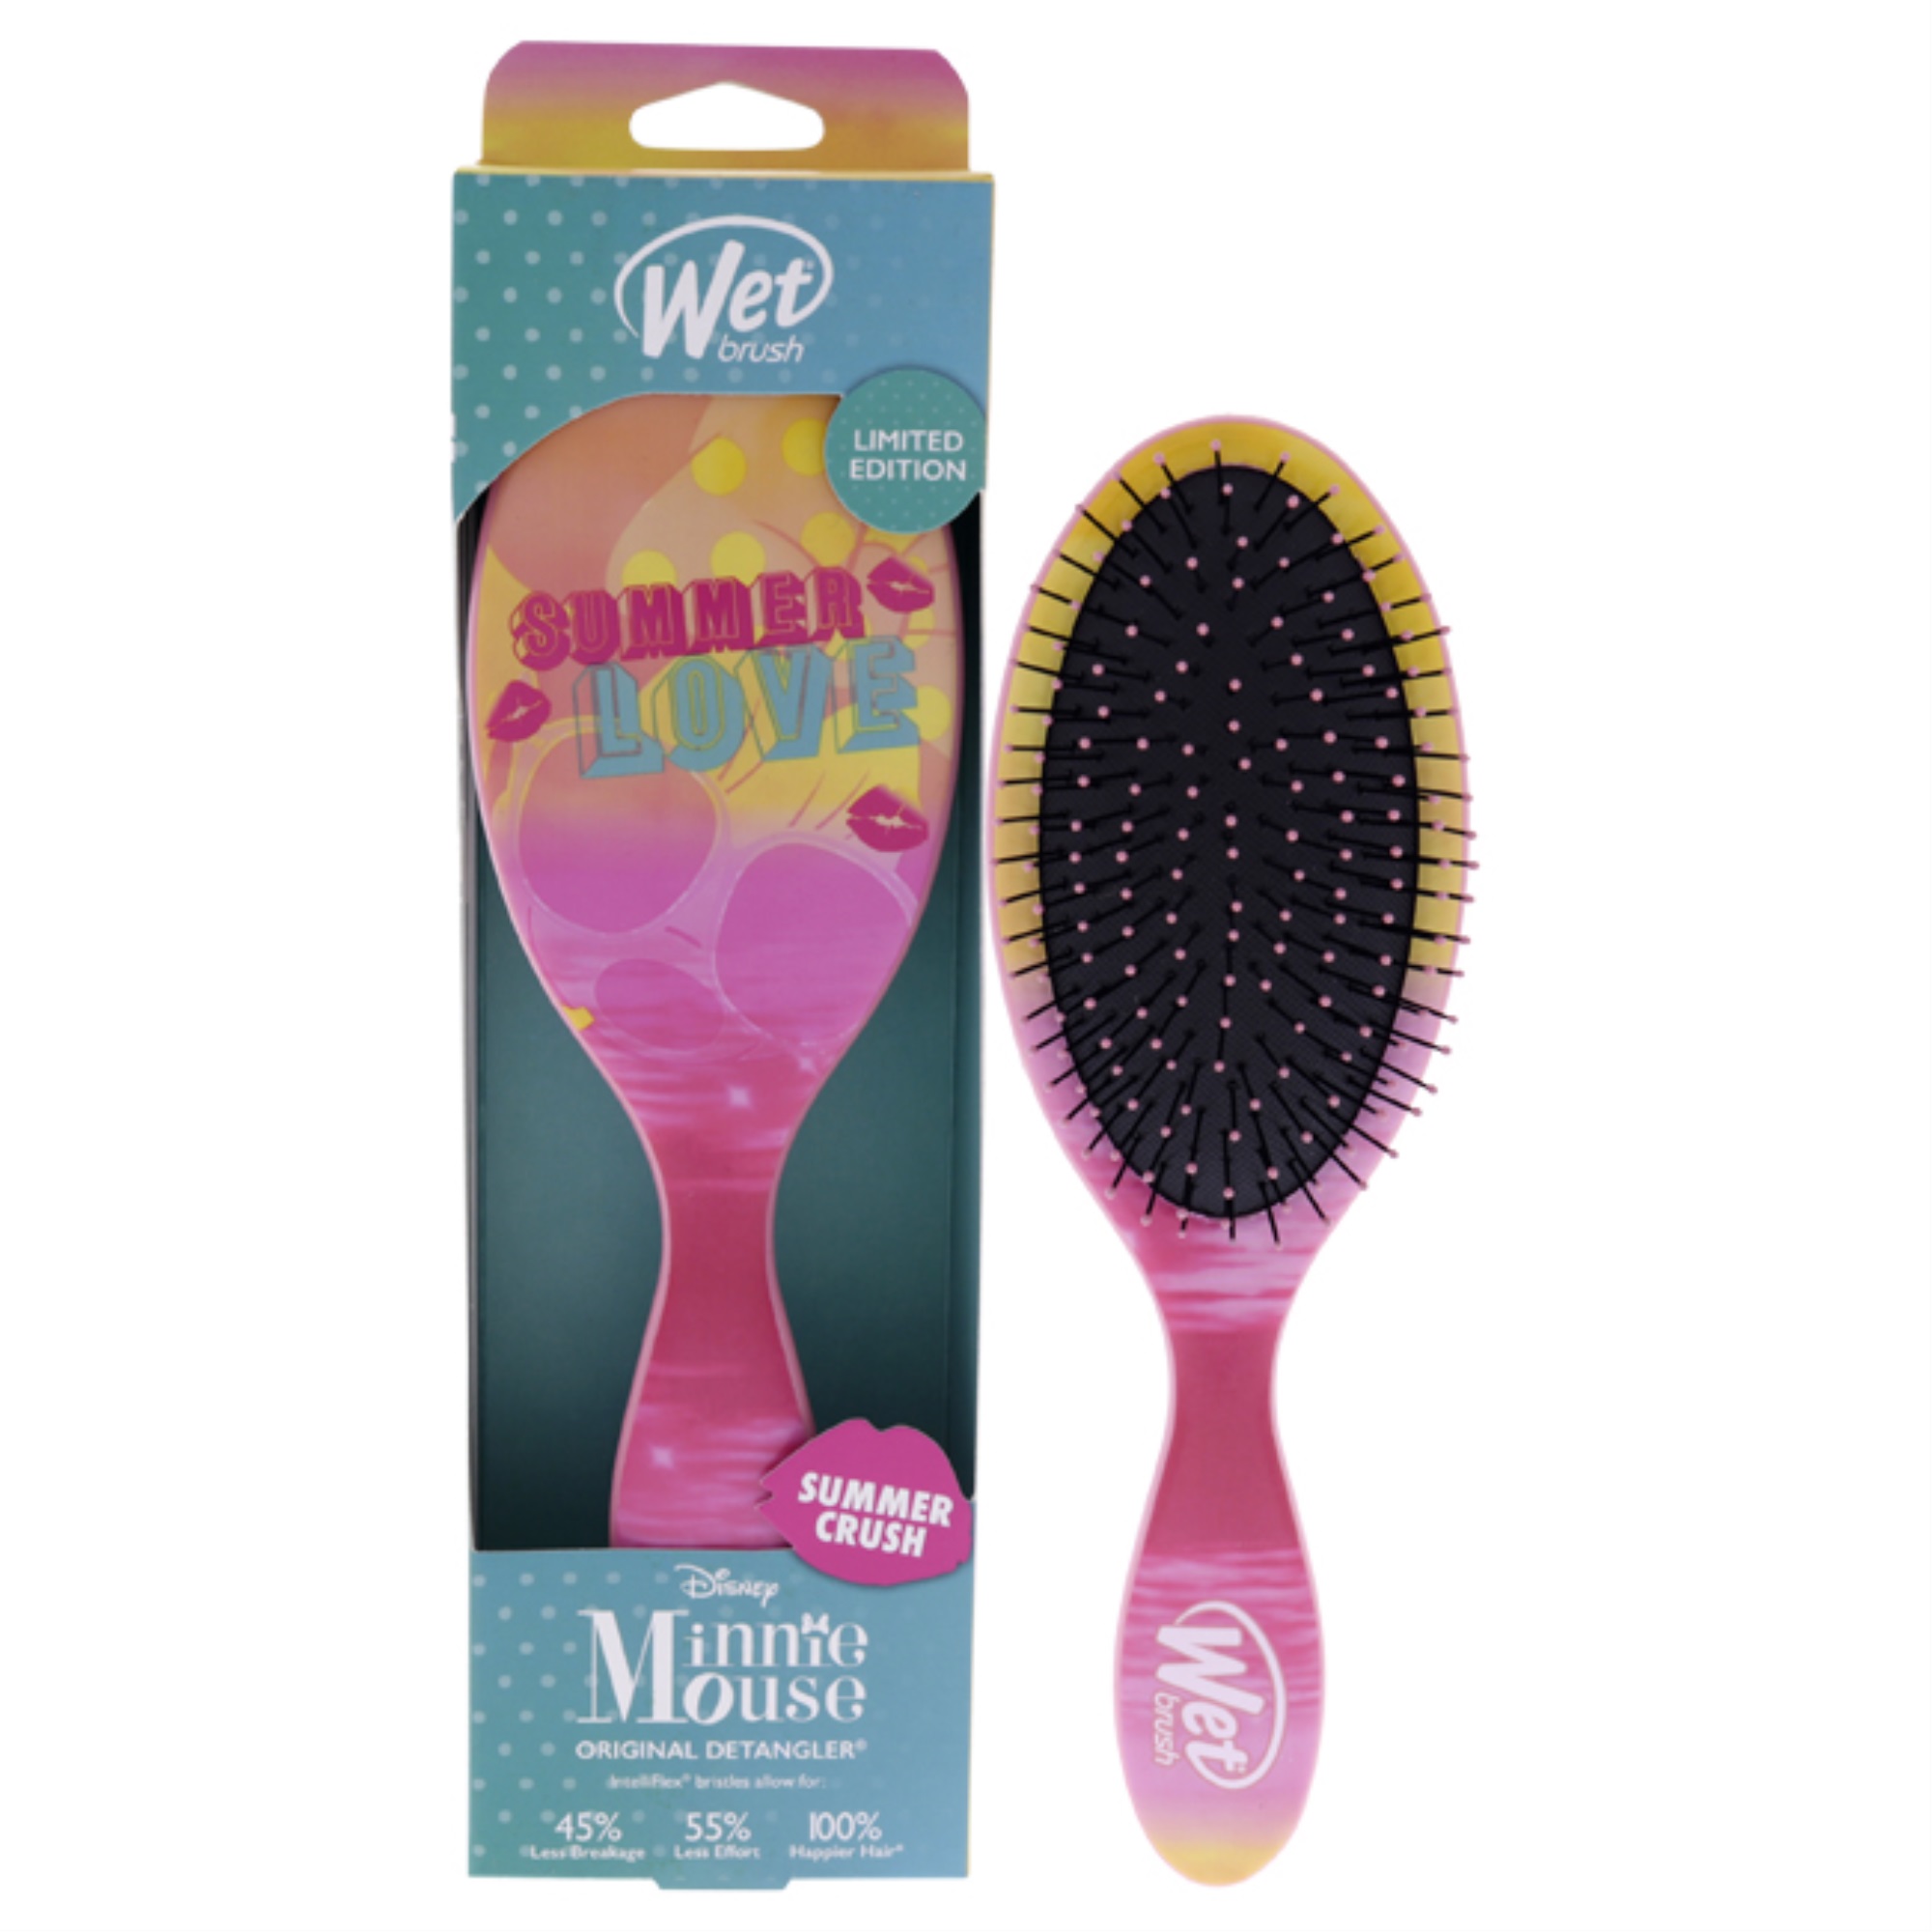 Wet Brush Original Detangler Summer Crush Brush - Summer Love by Wet Brush for Unisex - 1 Pc Hair Brush